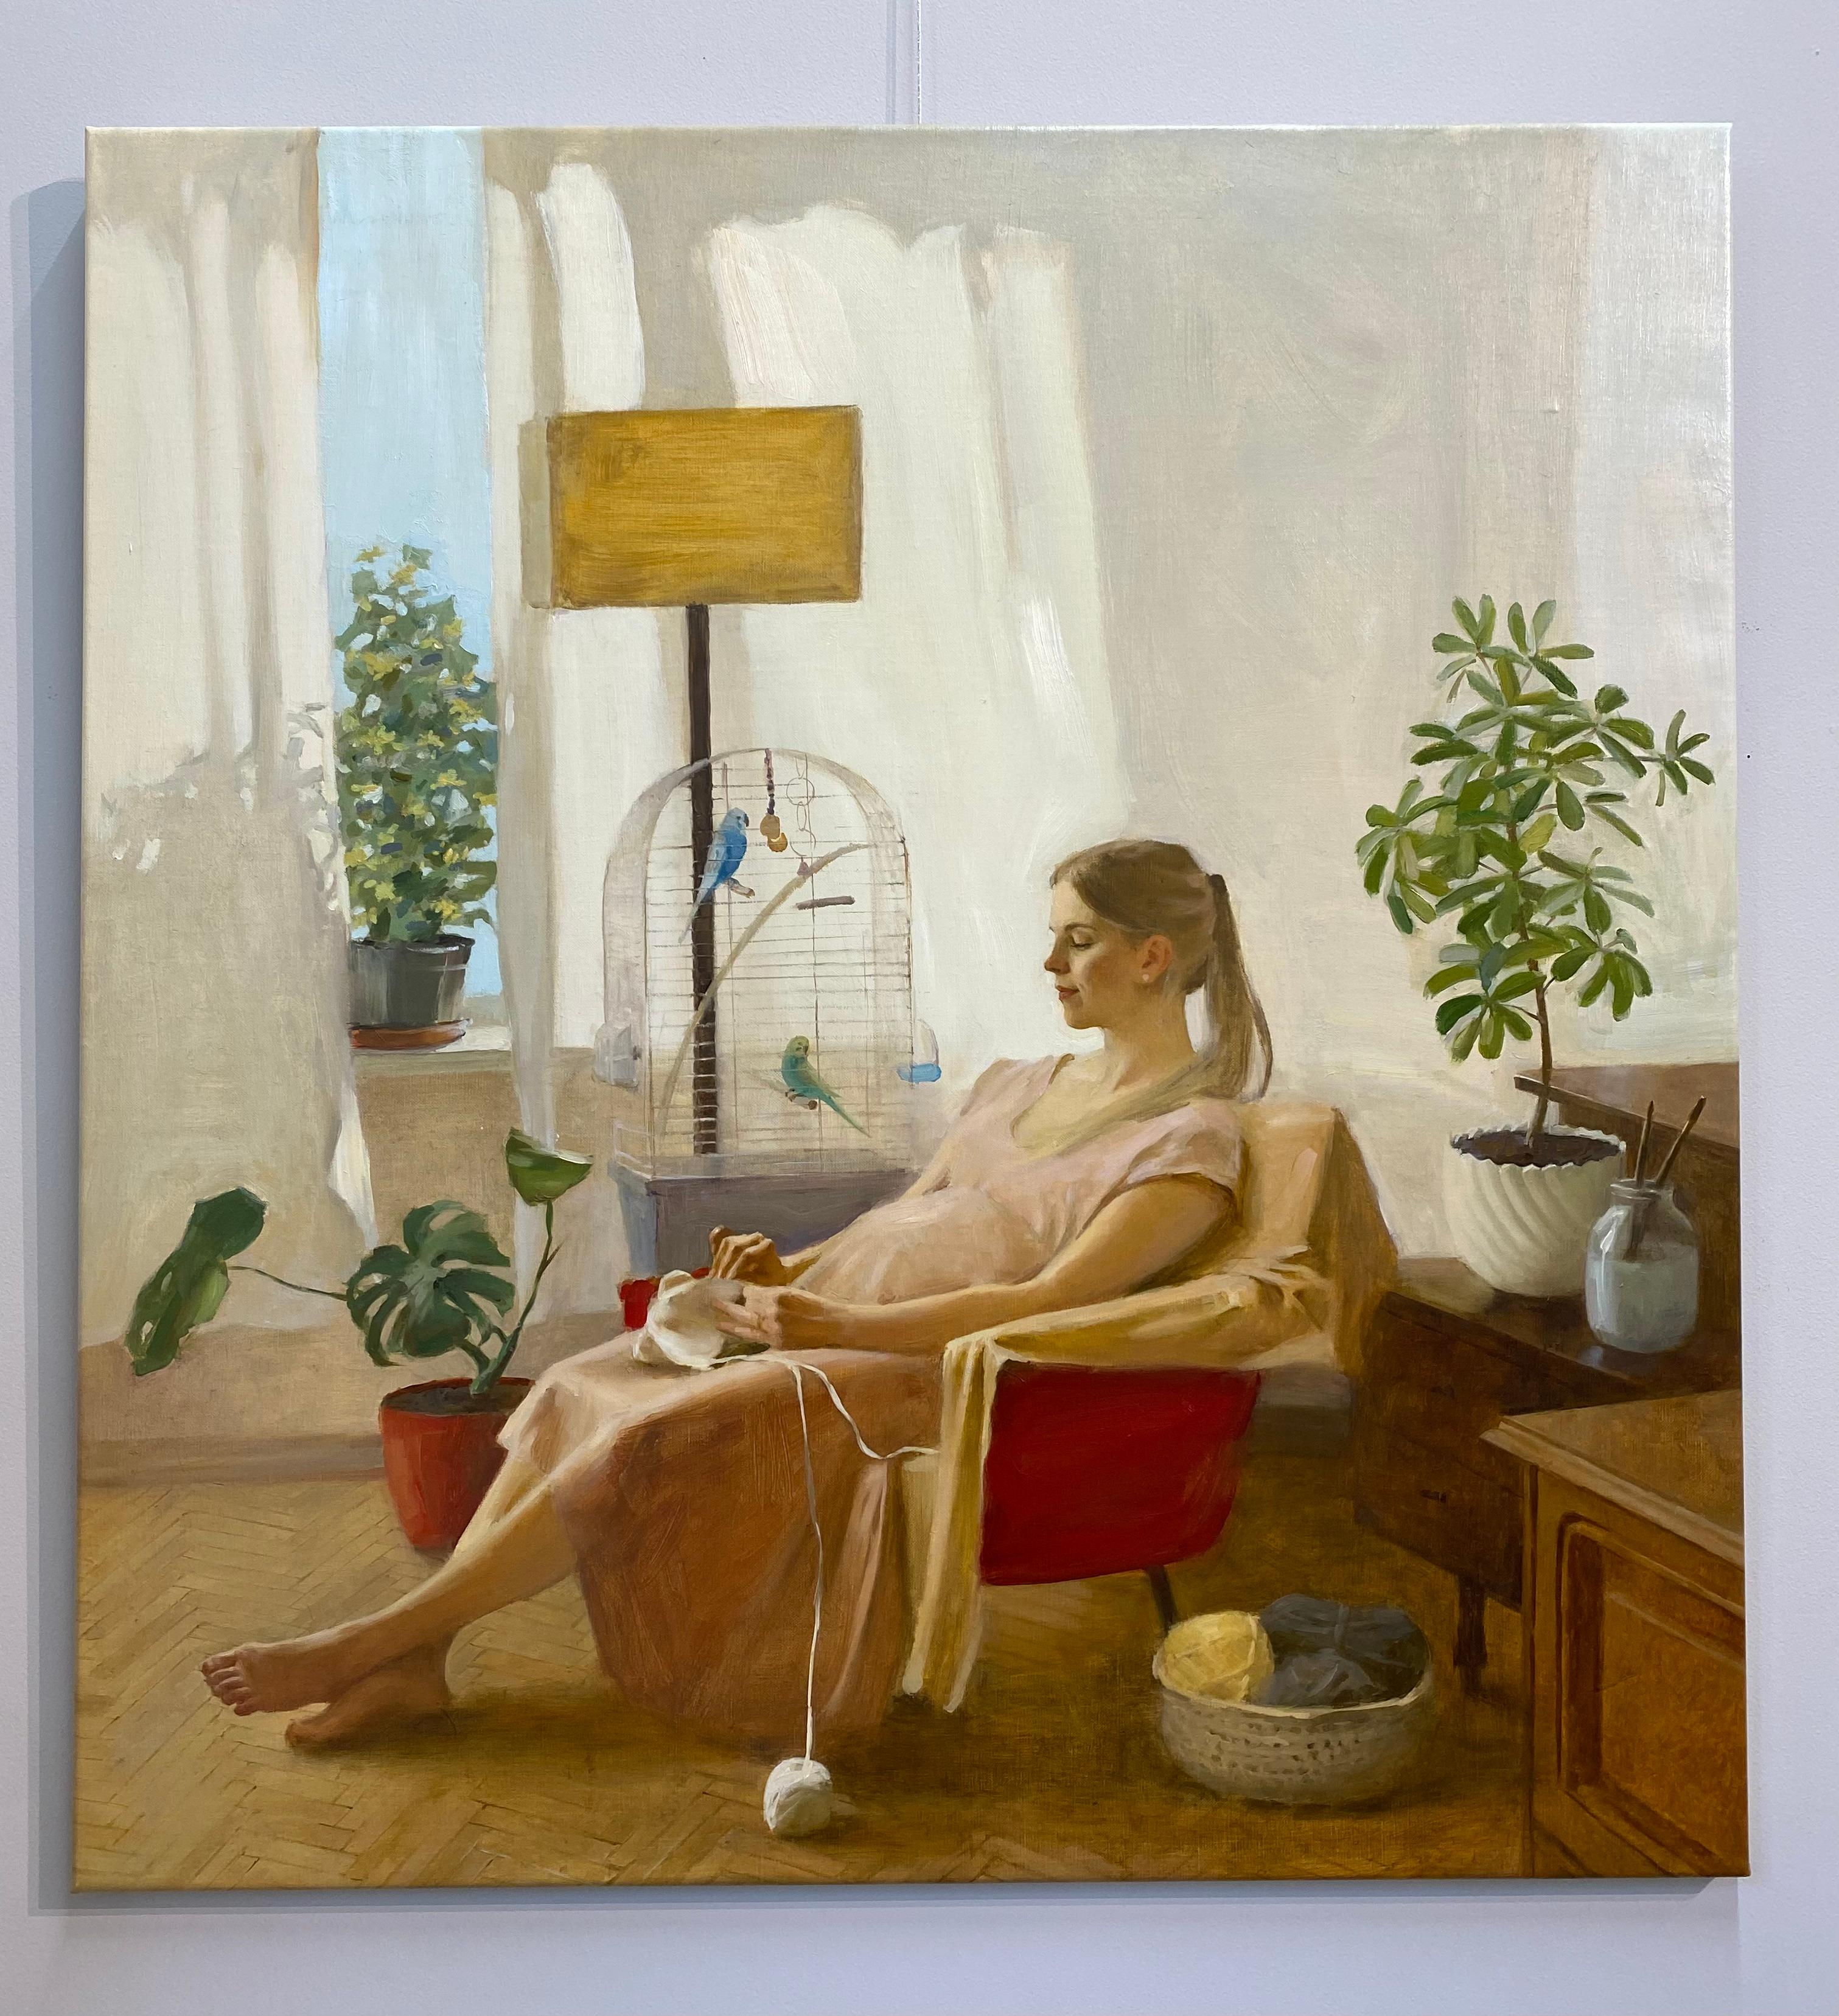 Bright Expectations - Peinture figurative du 21e siècle d'une jeune femme en grossesse - Painting de Ksenya Istomina